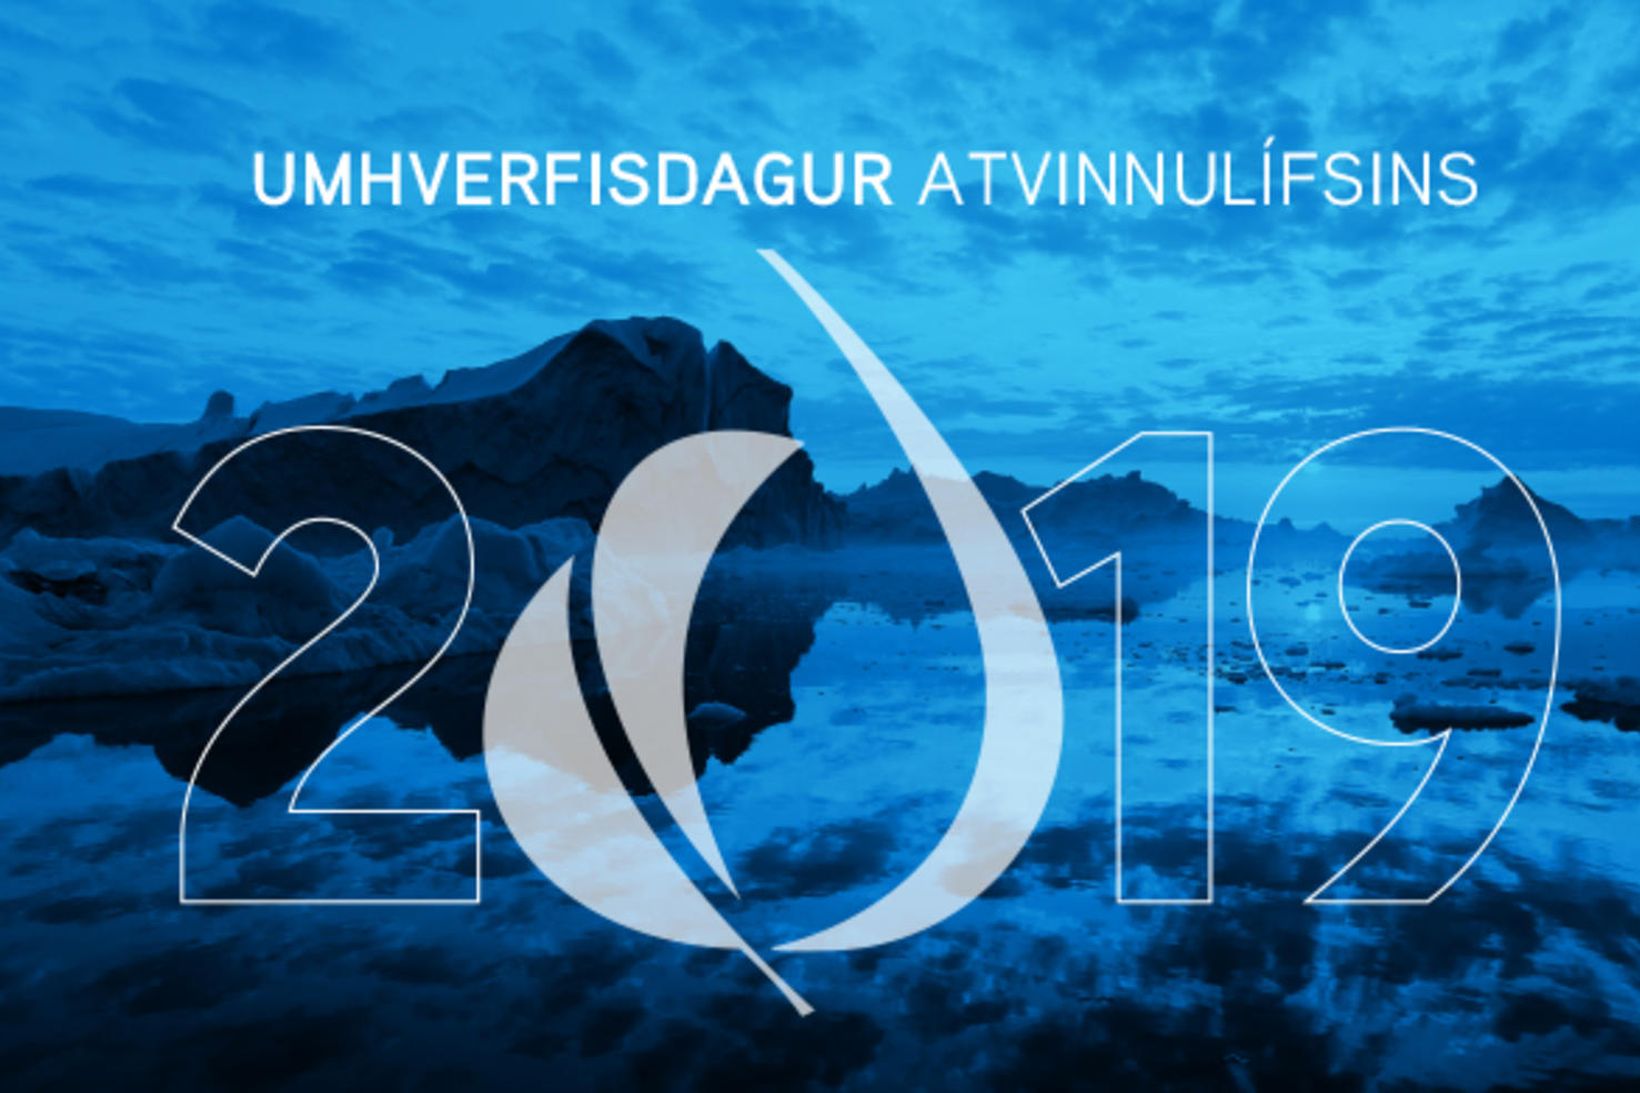 Umhverfisdagur atvinnulífsins 2019 verður haldinn í Hörpu í dag.